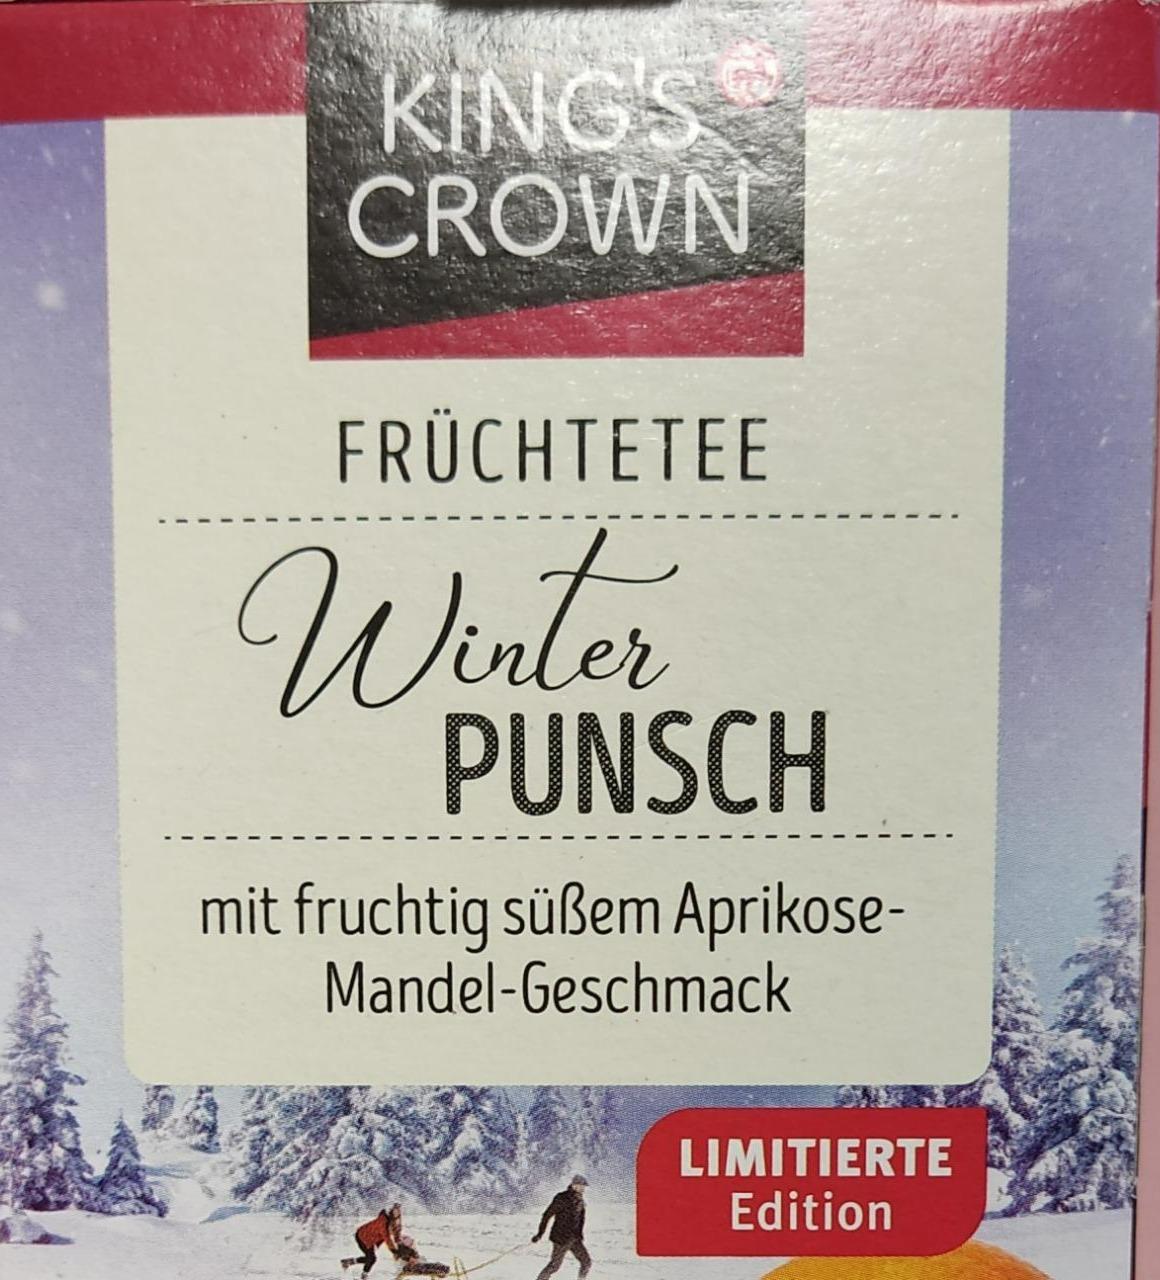 Fotografie - Früchtetee Winter punch mit fruchtig süßem Aprikose-Mandel-Geschmack King's Crown